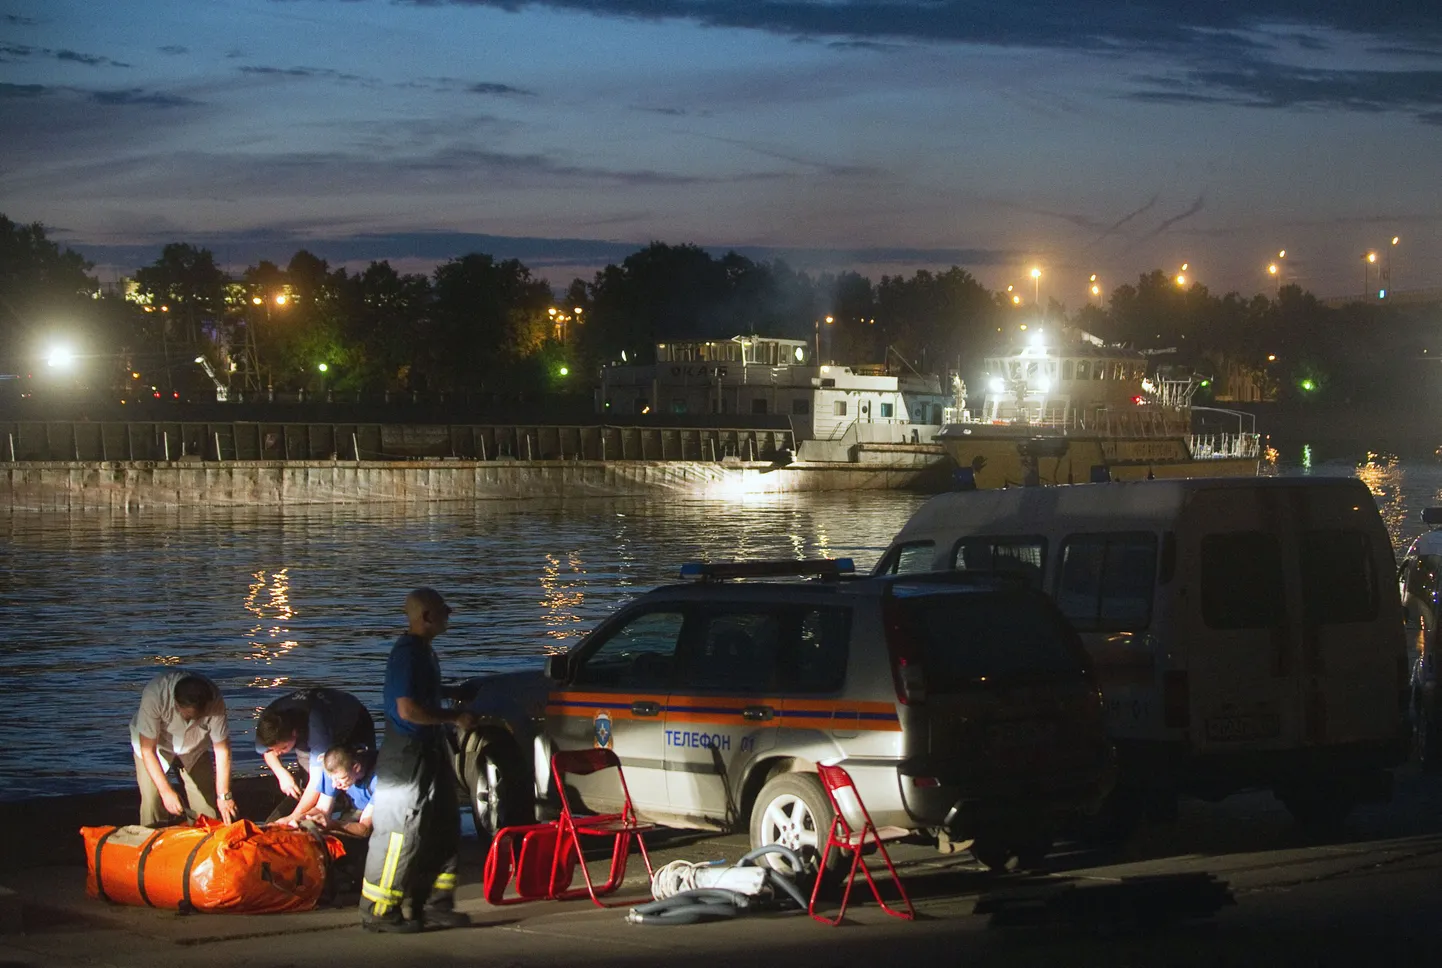 Moskva jõel toimunud laevaõnnetuses on esialgsetel andmetel hukkunud vähemalt viis inimest